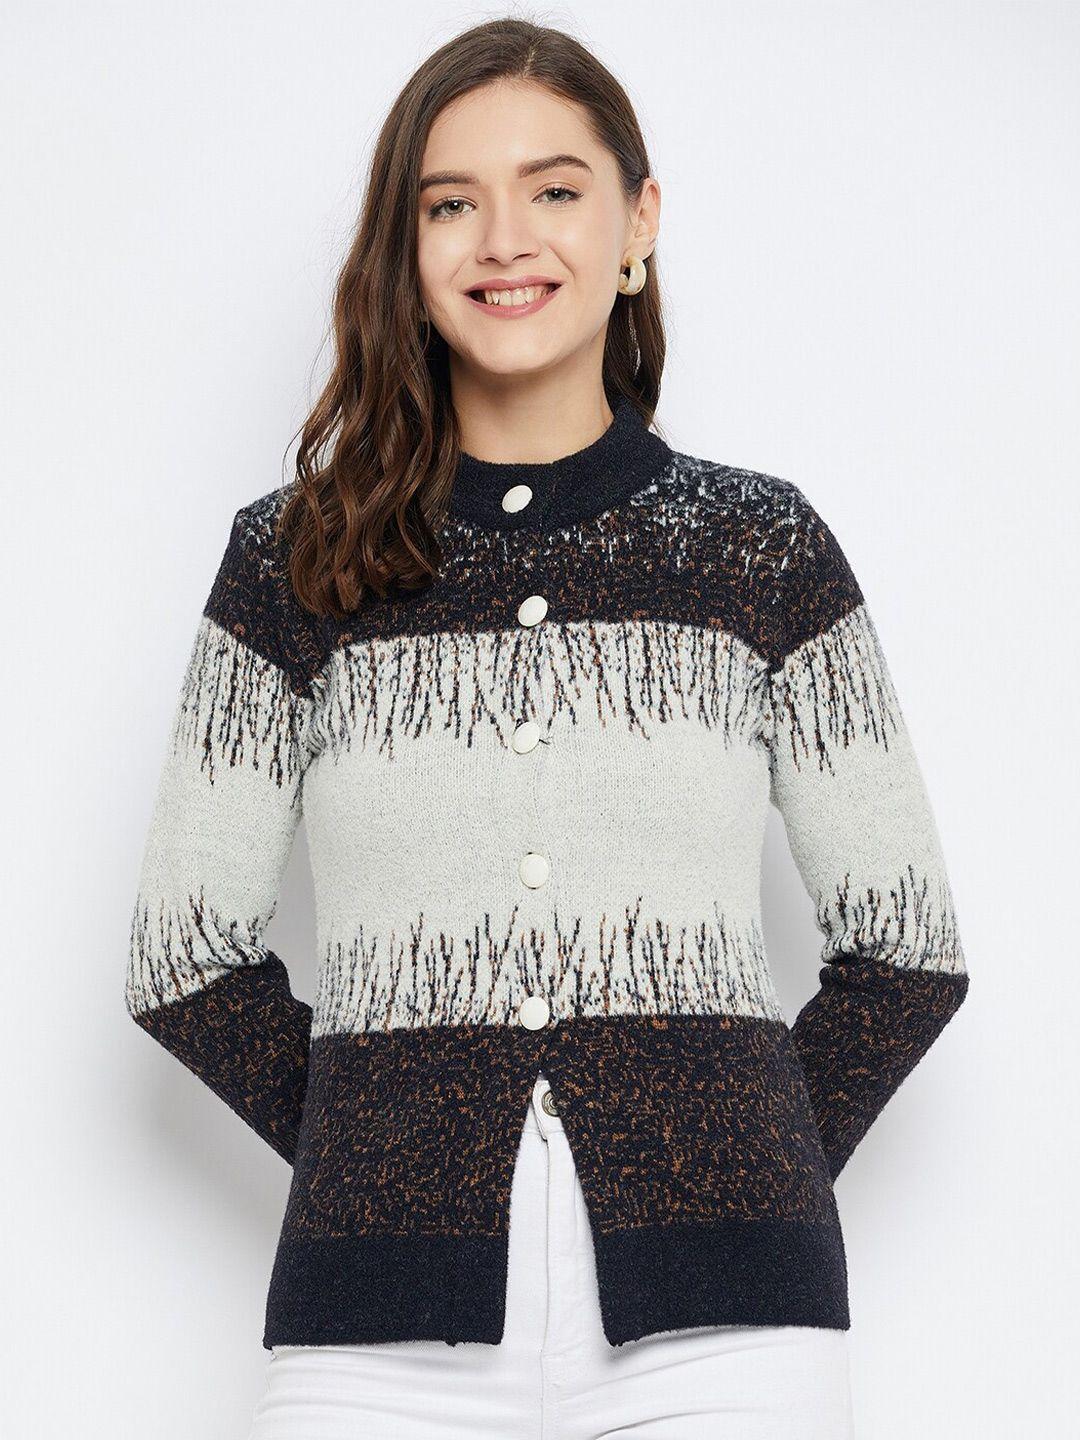 zigo quirky printed woollen cardigan sweater